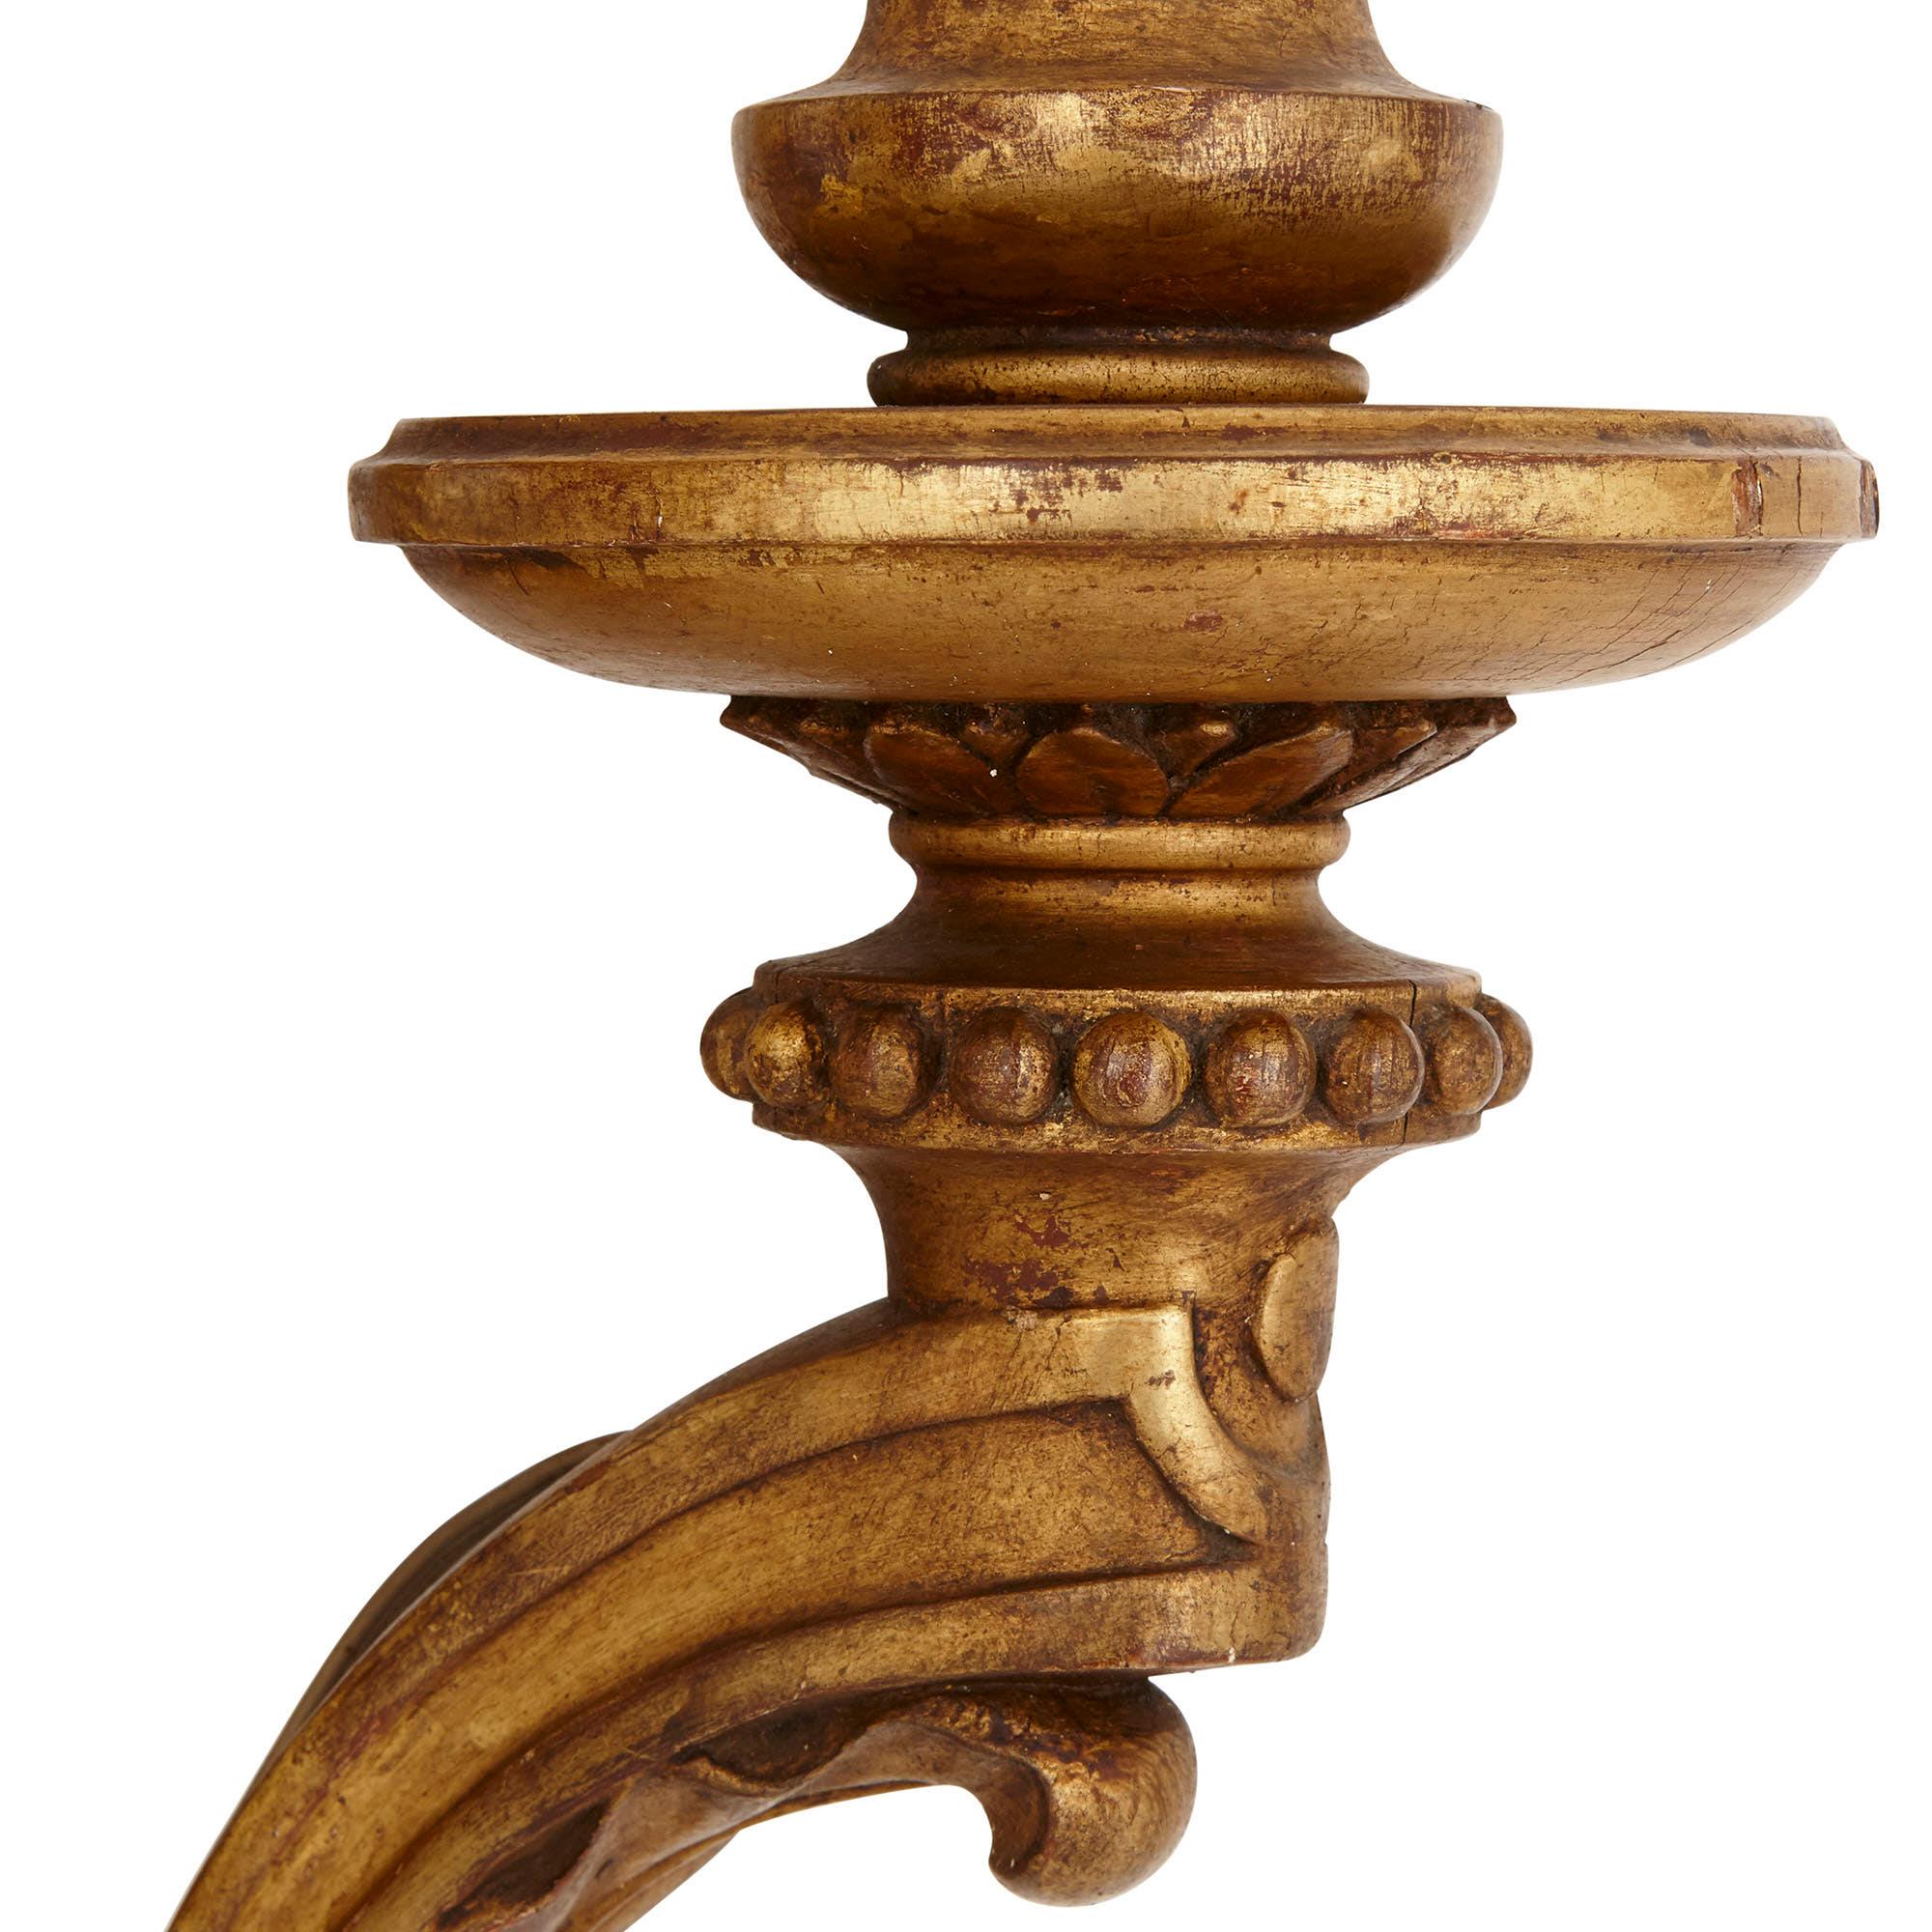 Ces magnifiques appliques en bois doré sont conçues dans le style de l'art décoratif produit à l'époque Louis XVI (1774-1793). Cette période a vu l'émergence du style néoclassique, qui se caractérise par une utilisation parcimonieuse et élégante des